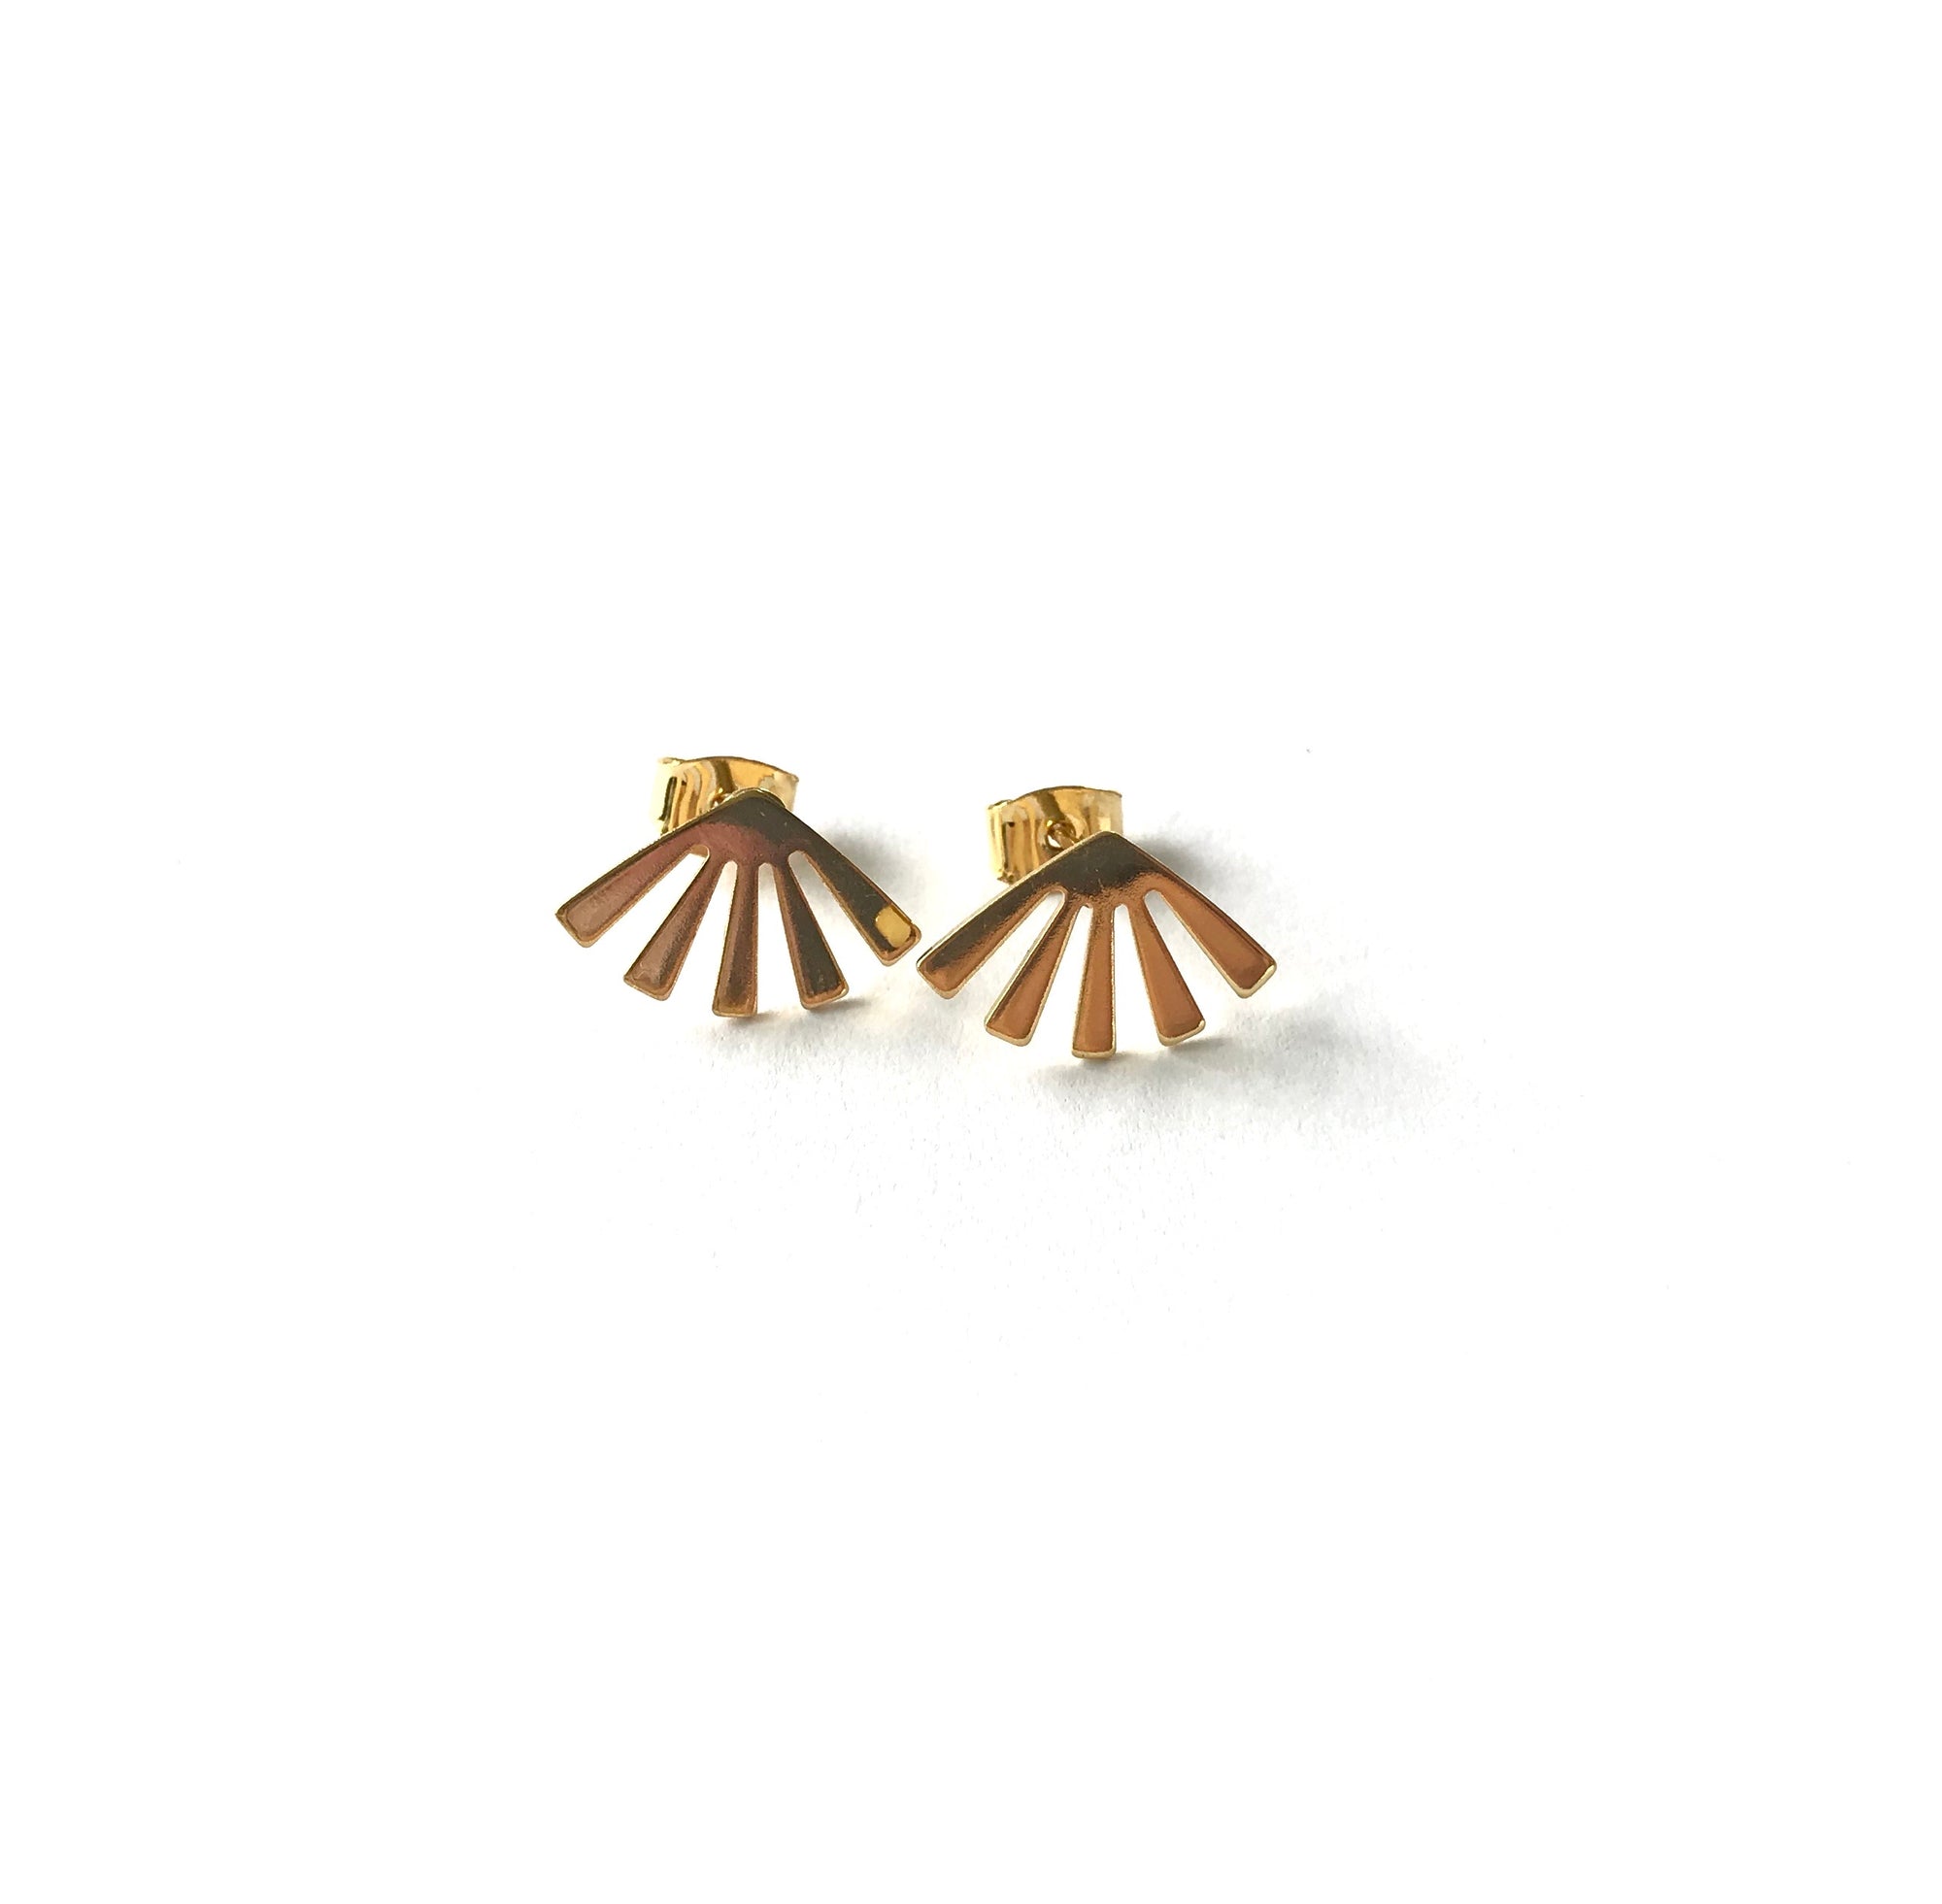 elegant gold plated sun rays stud earrings in a fan shaped design